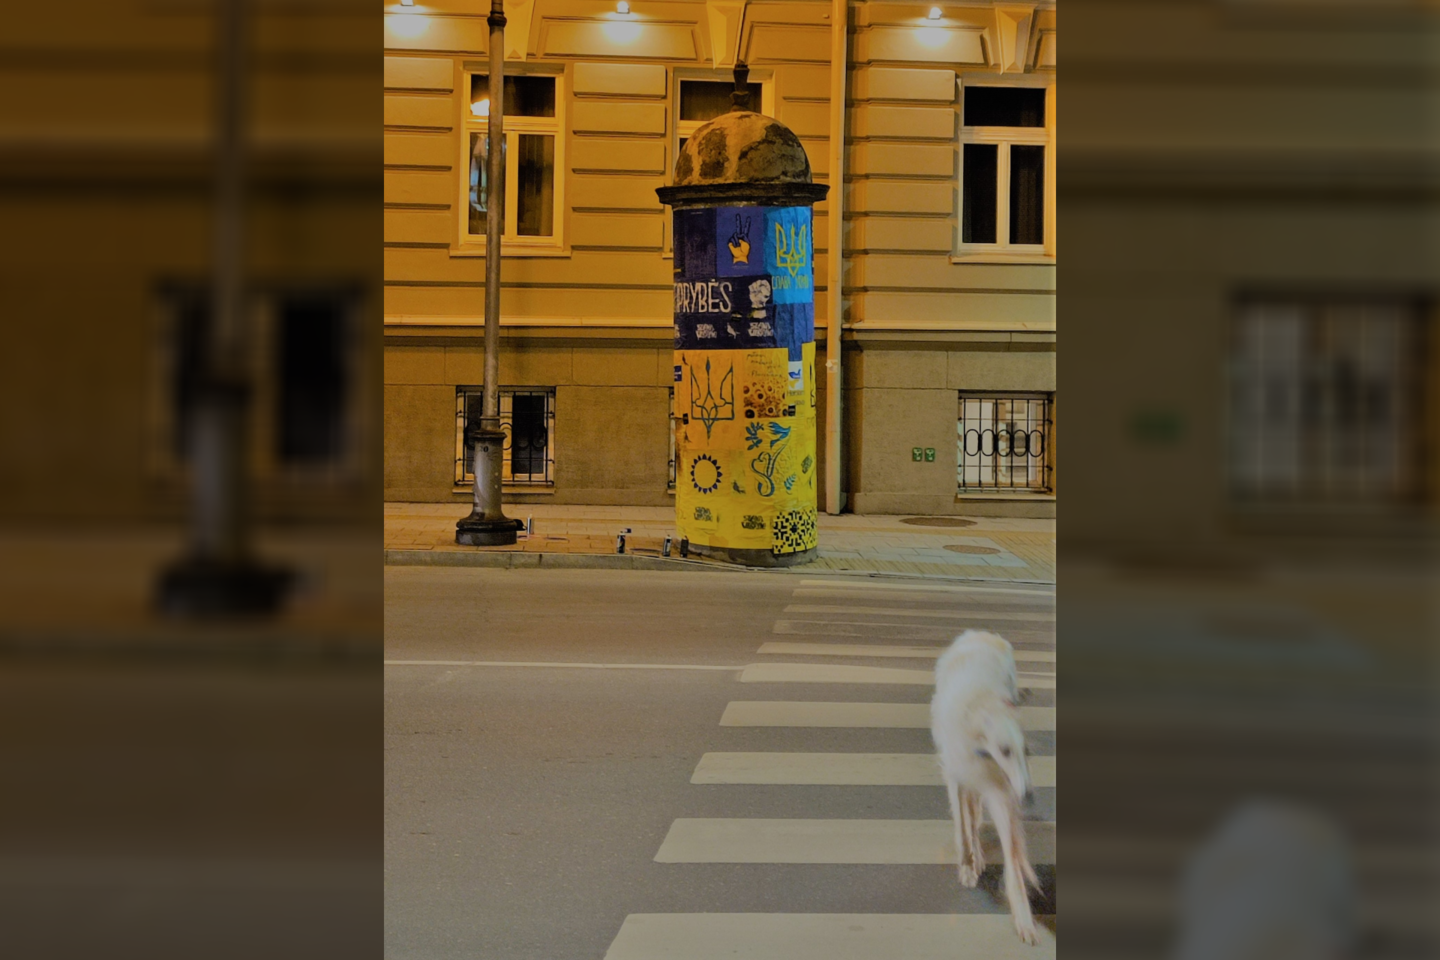  Senoji skelbimų lenta Maironio gatvėje, Vilniuje.<br> VDA nuotr.